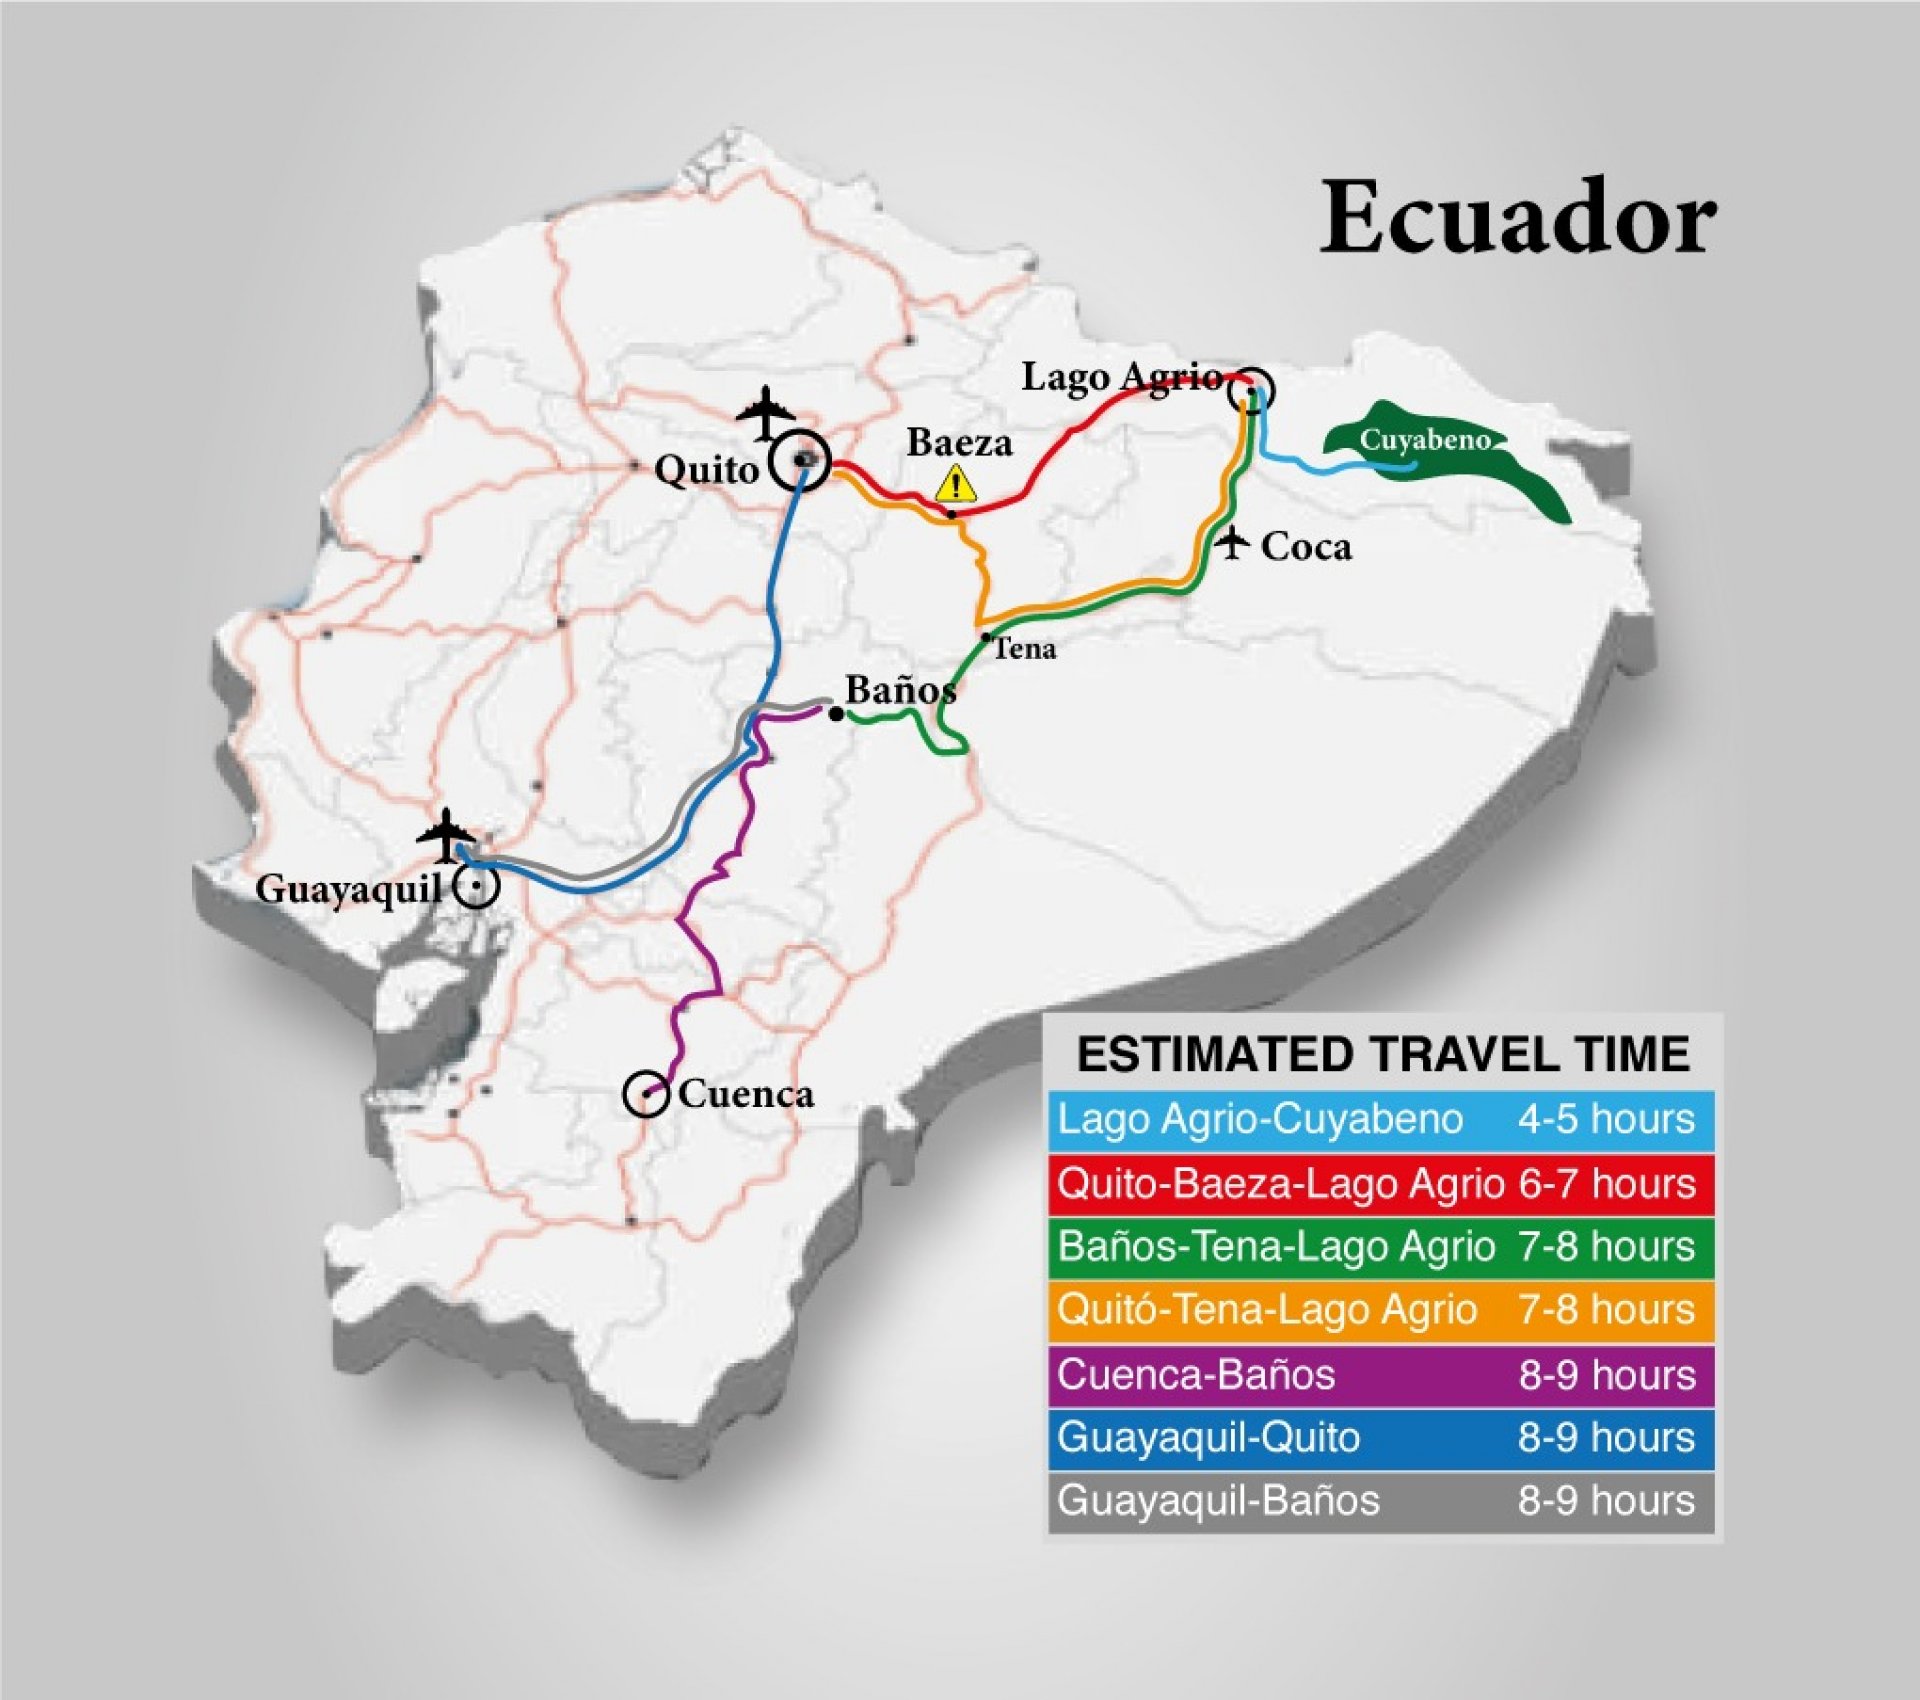 �C�mo llegar a Lago Agrio desde Quito en Bus?